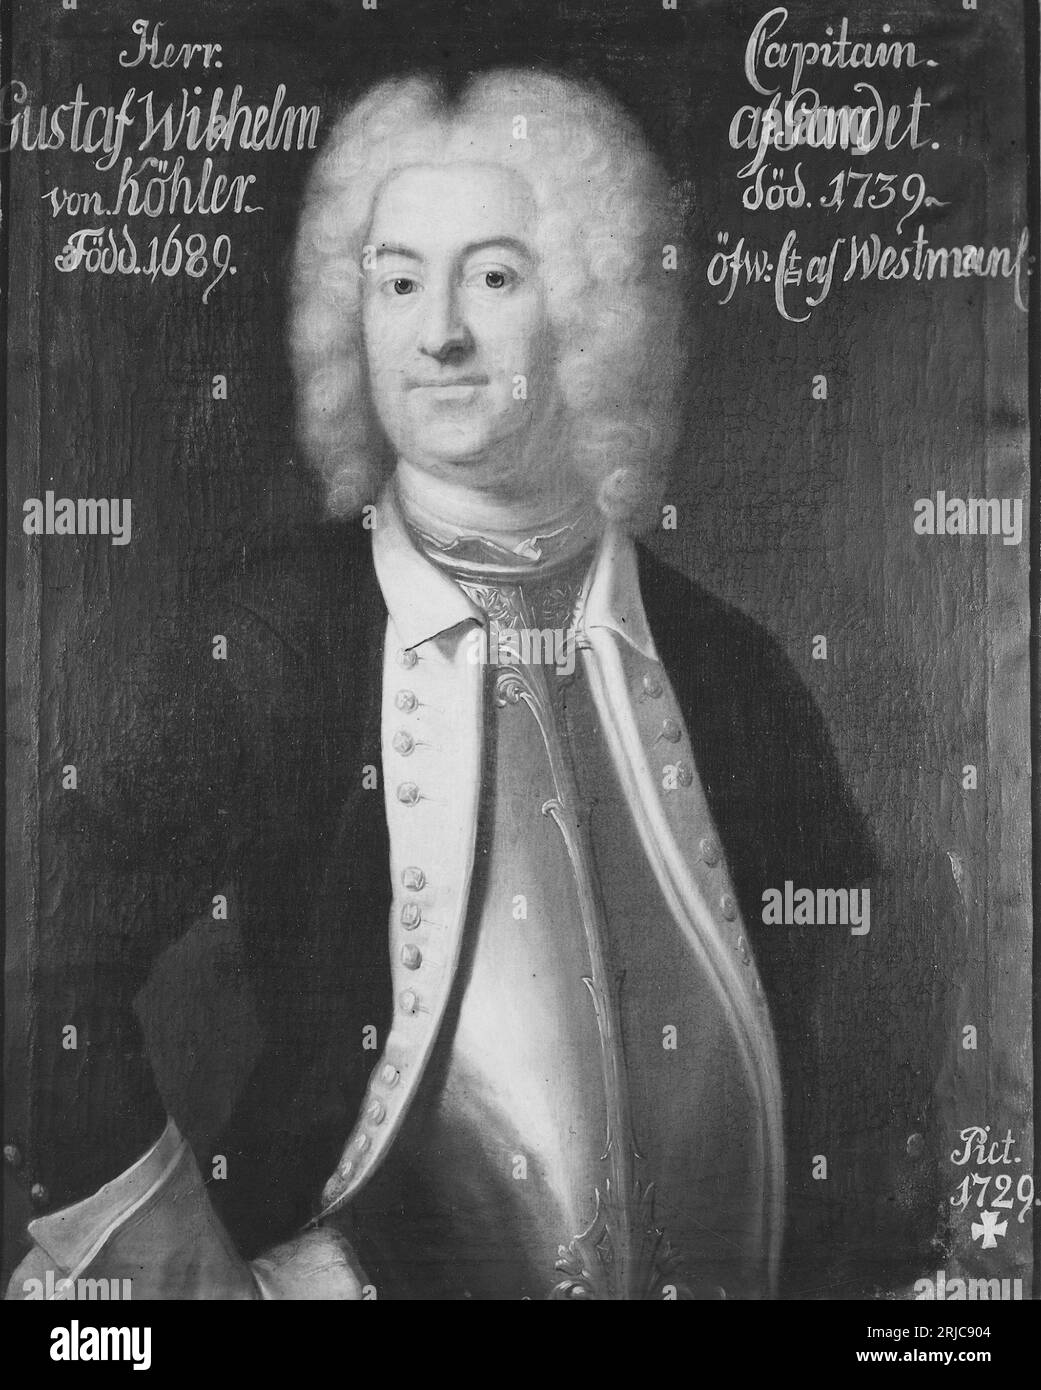 Gustaf Wilhelm von Köhler, 1690-1739, friherre 1729 by Johan Henrik Scheffel Stock Photo